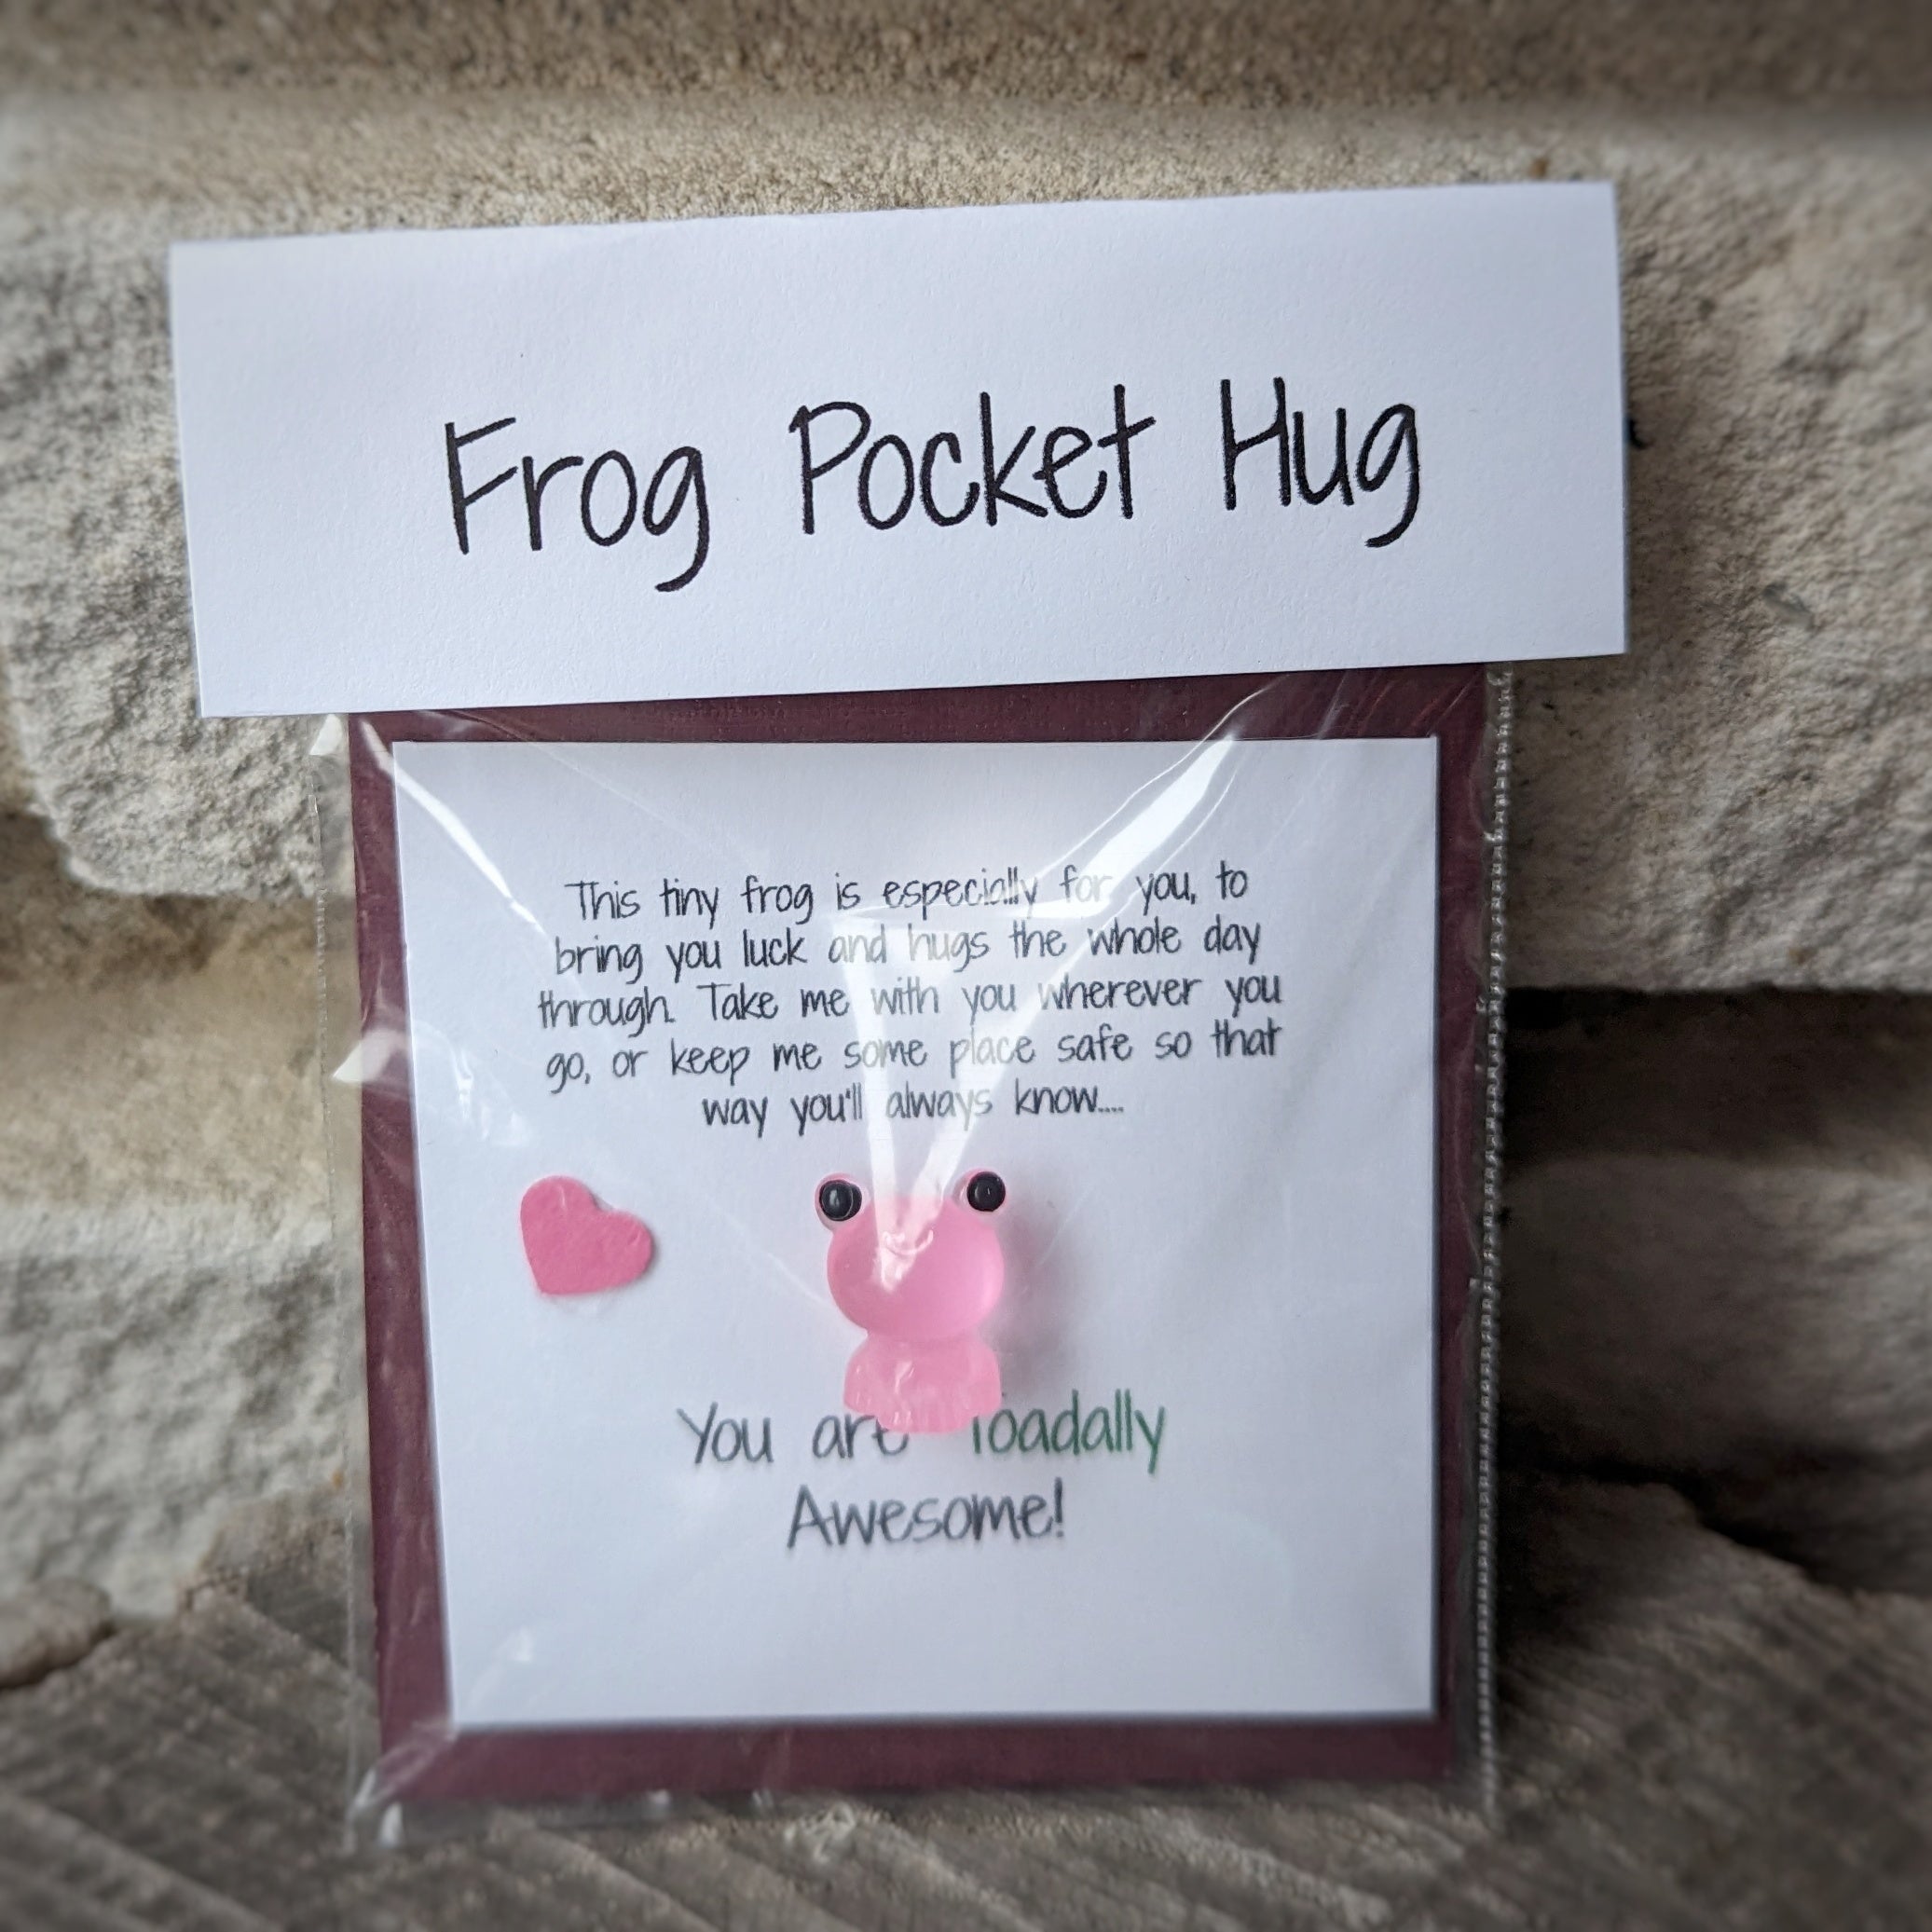 Pocket Hug frogs